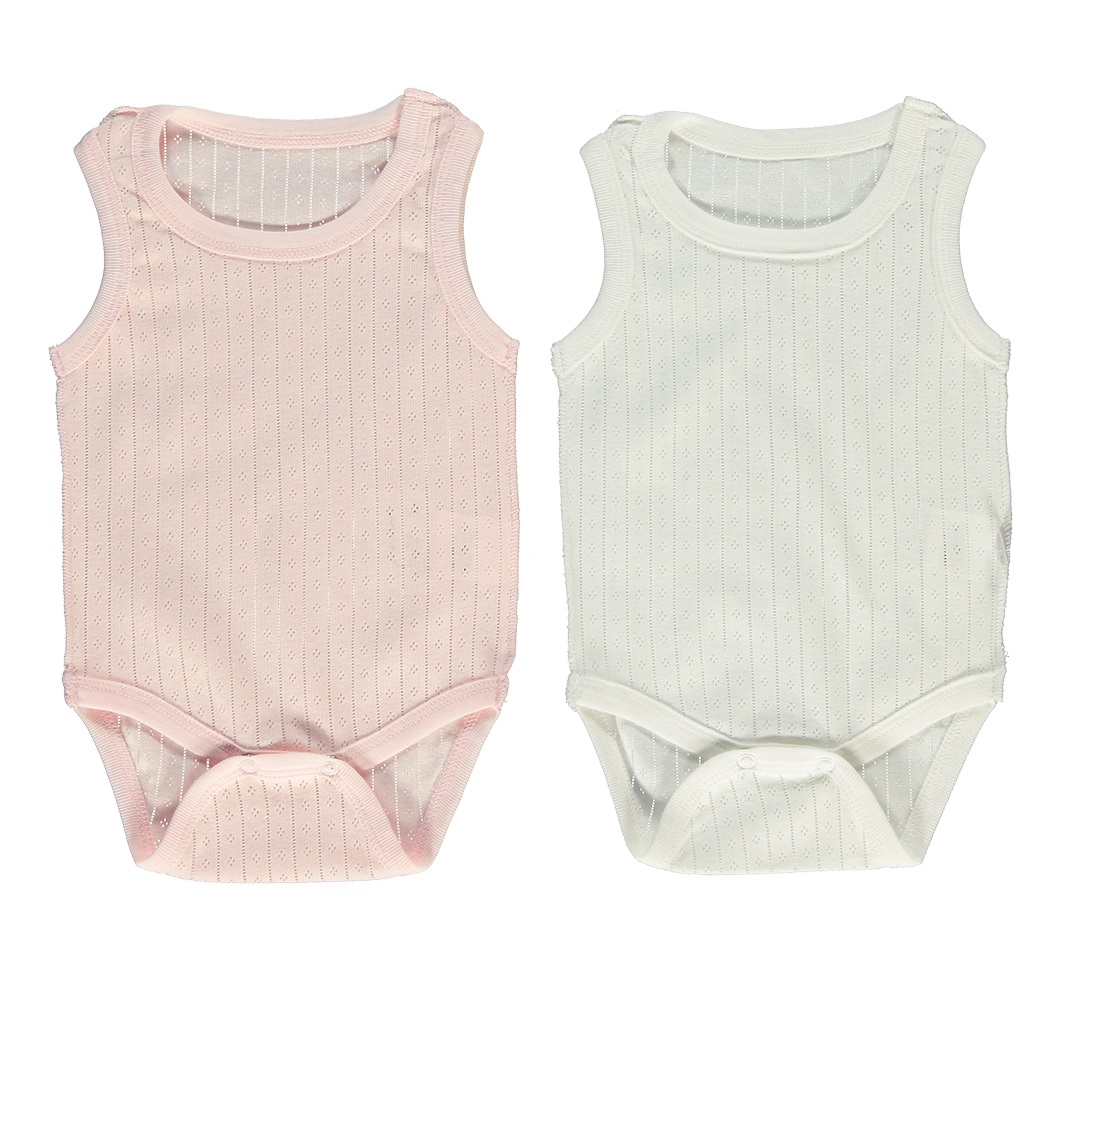 Παιδικά/Baby/Ρούχα/Φορμάκια-Κορμάκια SAM 0-13 - Βρεφικά φορμάκια σετ των 2 SAM 0-13 POINTEL εκρού ροζ